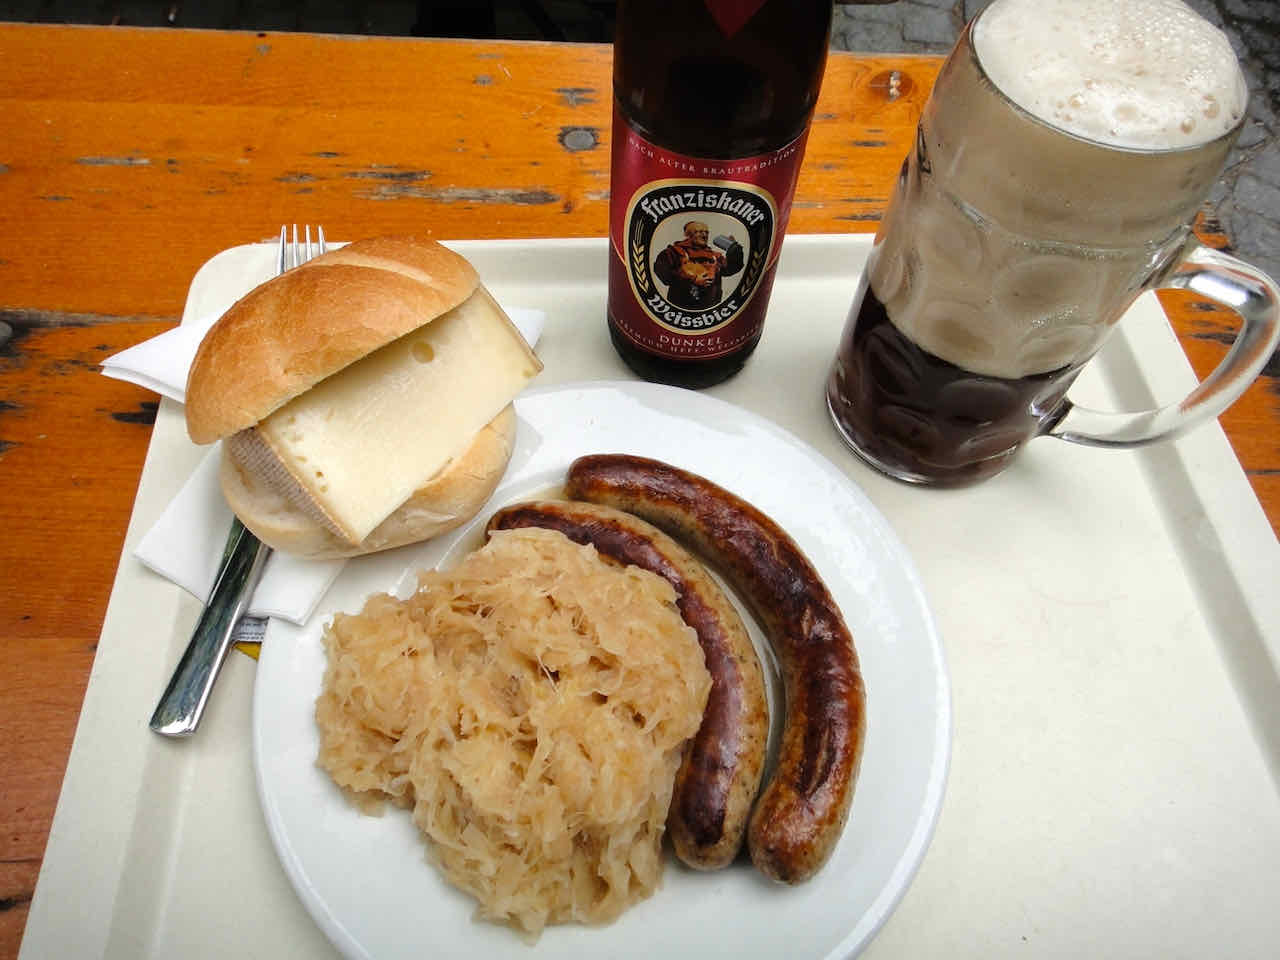 Munich bratwurst sauerkraut beer